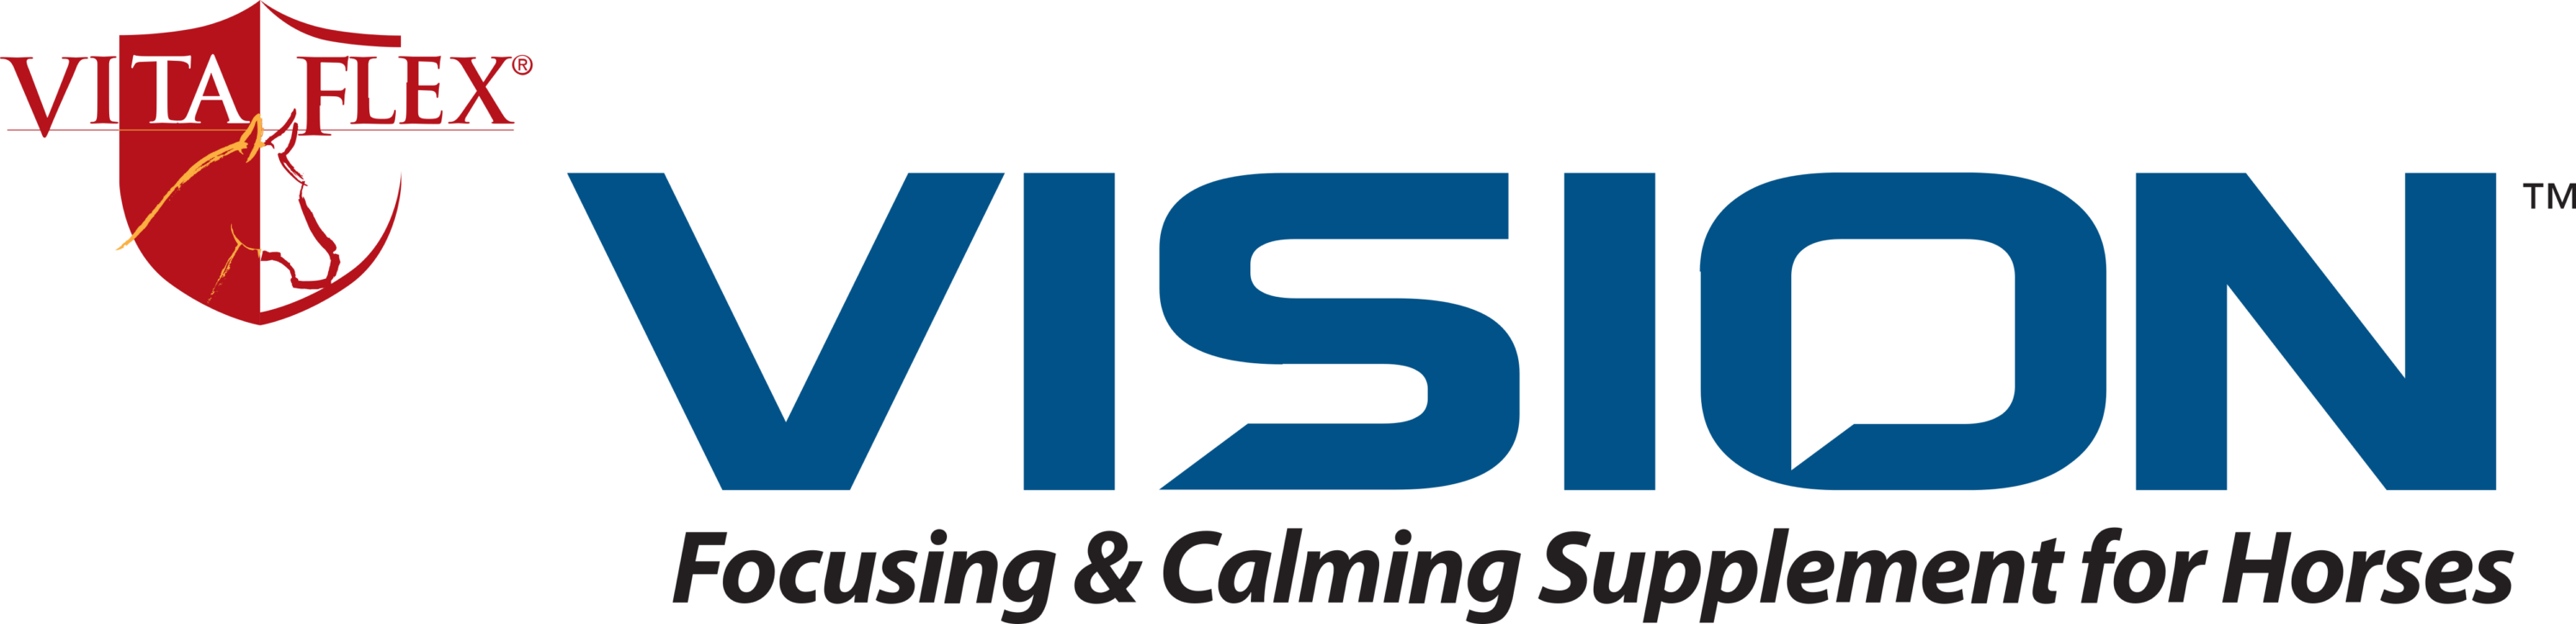 VITA FLEX VISION Focusing Calming Supplement for Horses Logo